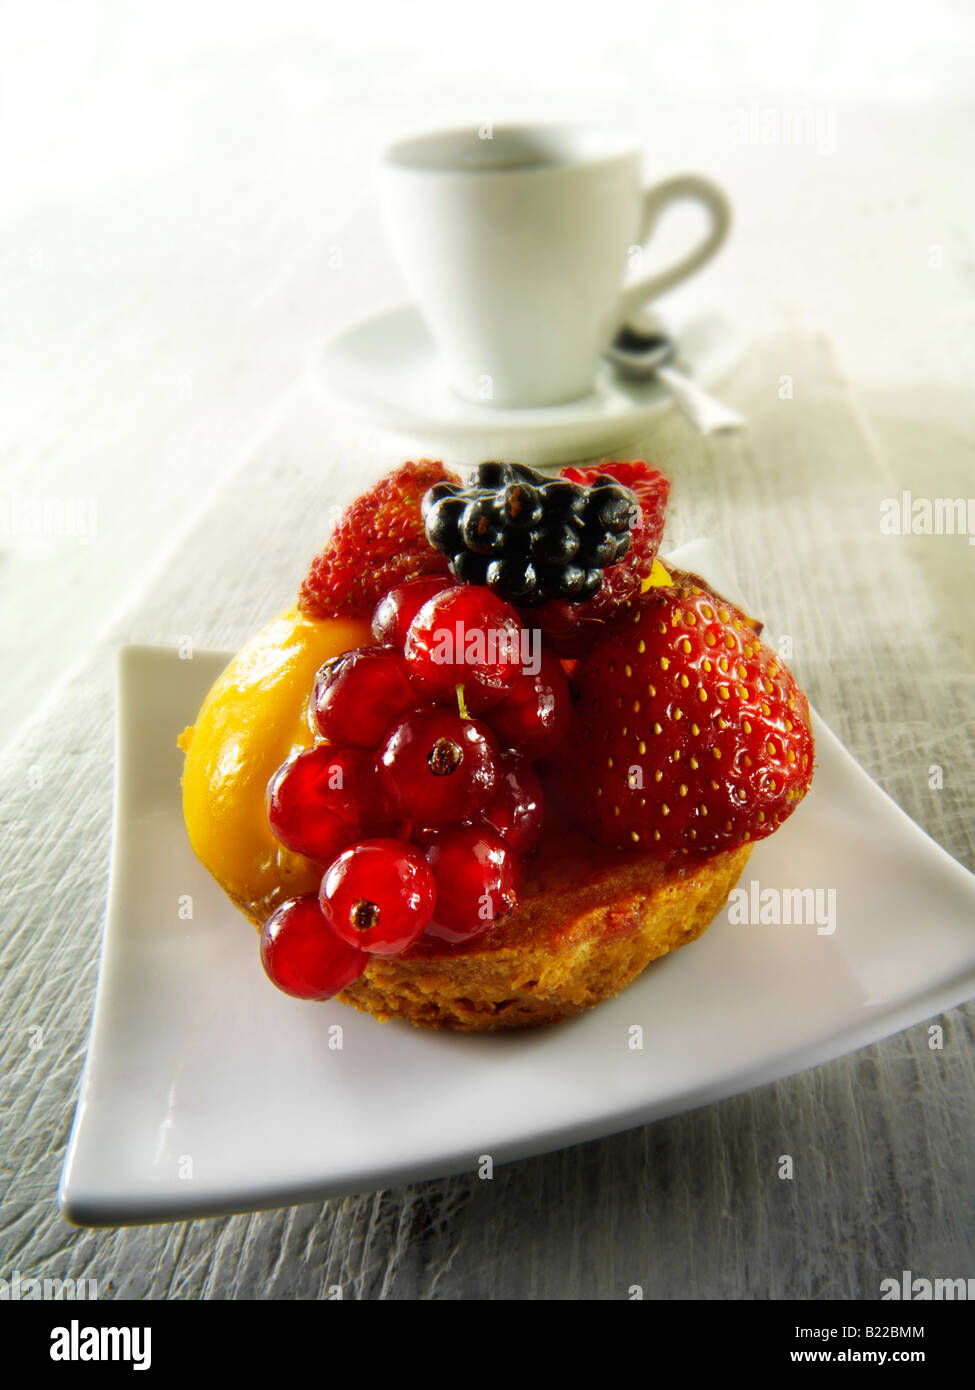 Un fruit d'été frais gâteau individuel avec mousse aux framboises dans un café avec café Banque D'Images